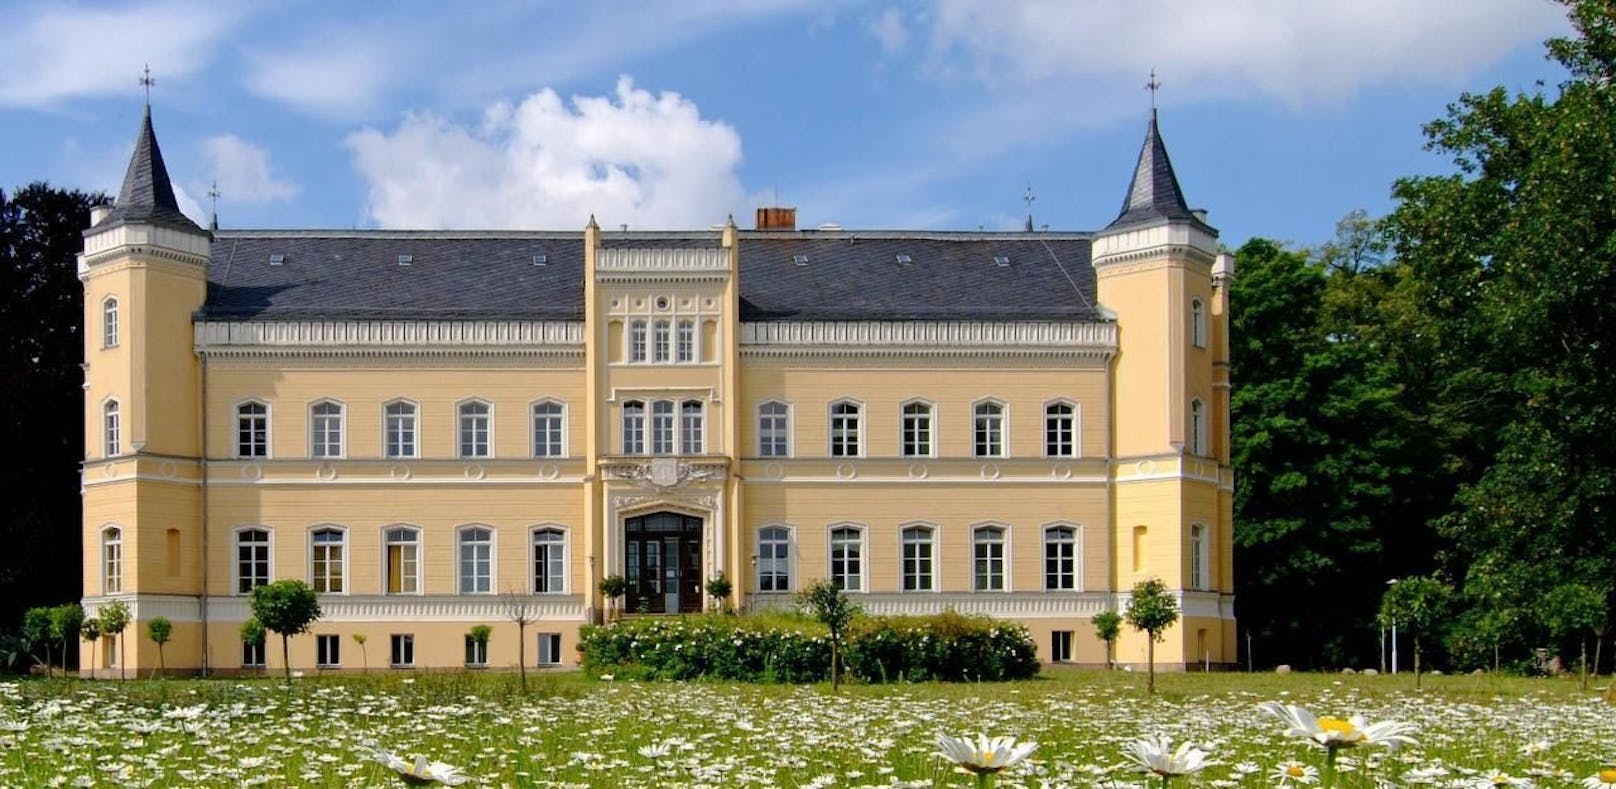 In der Nähe vom Schloss Kröchlendorff passierte die Vergewaltigung.